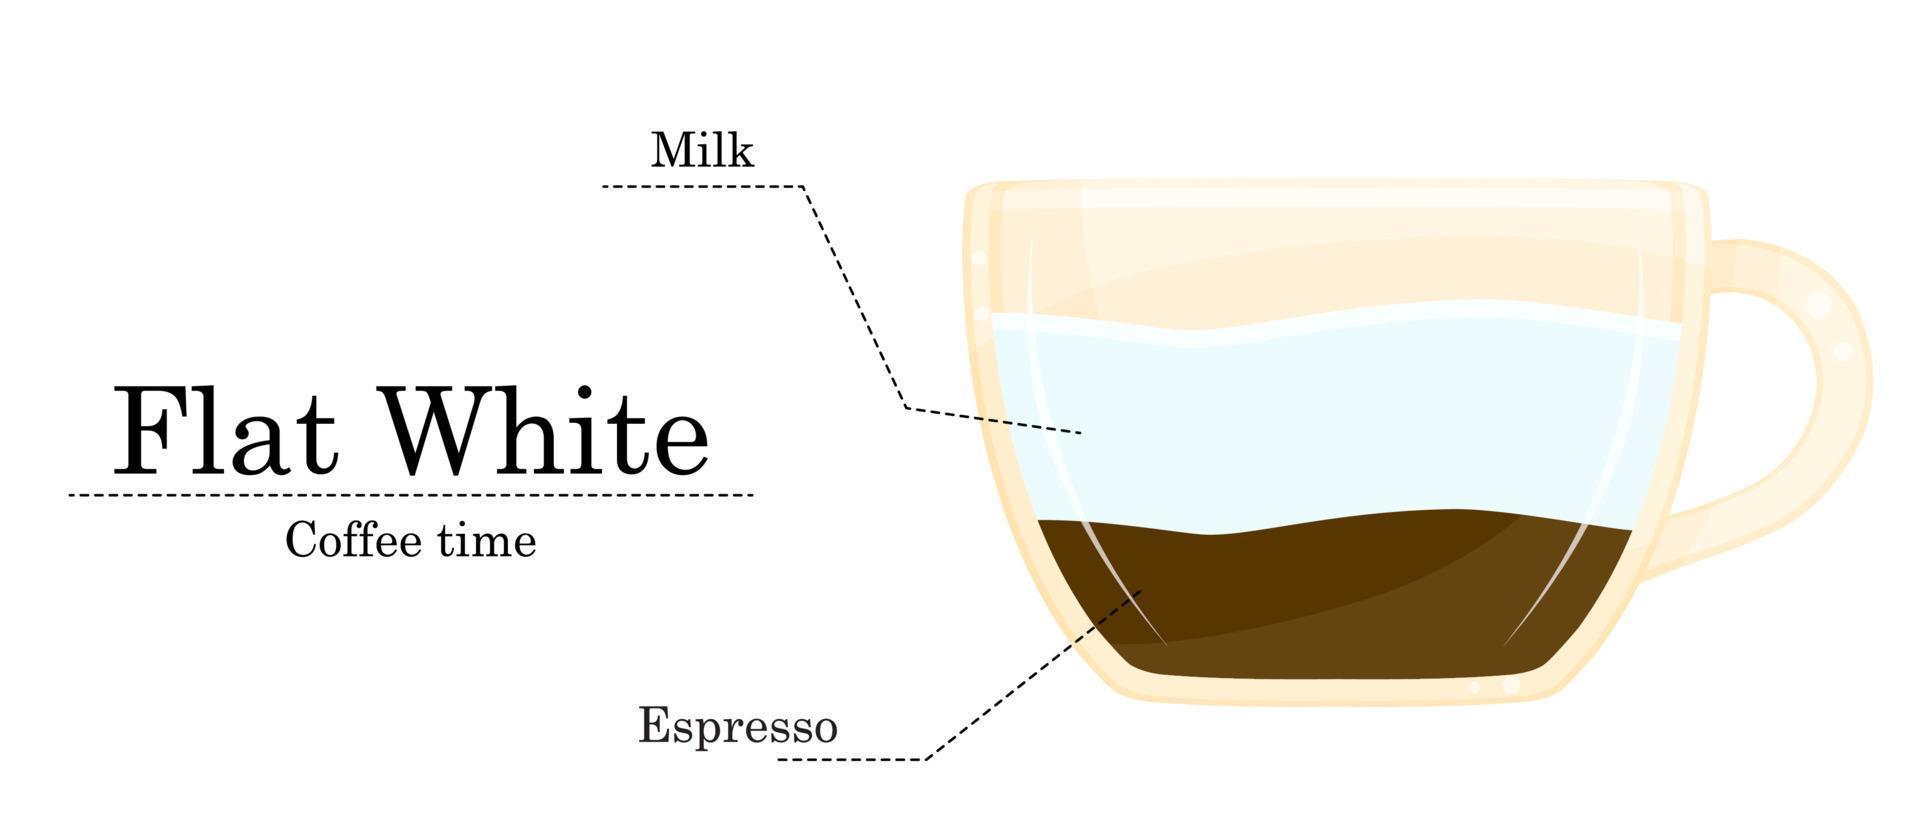 vector illustratie van koffie recept, vlak wit recept, koffie winkel illustratie